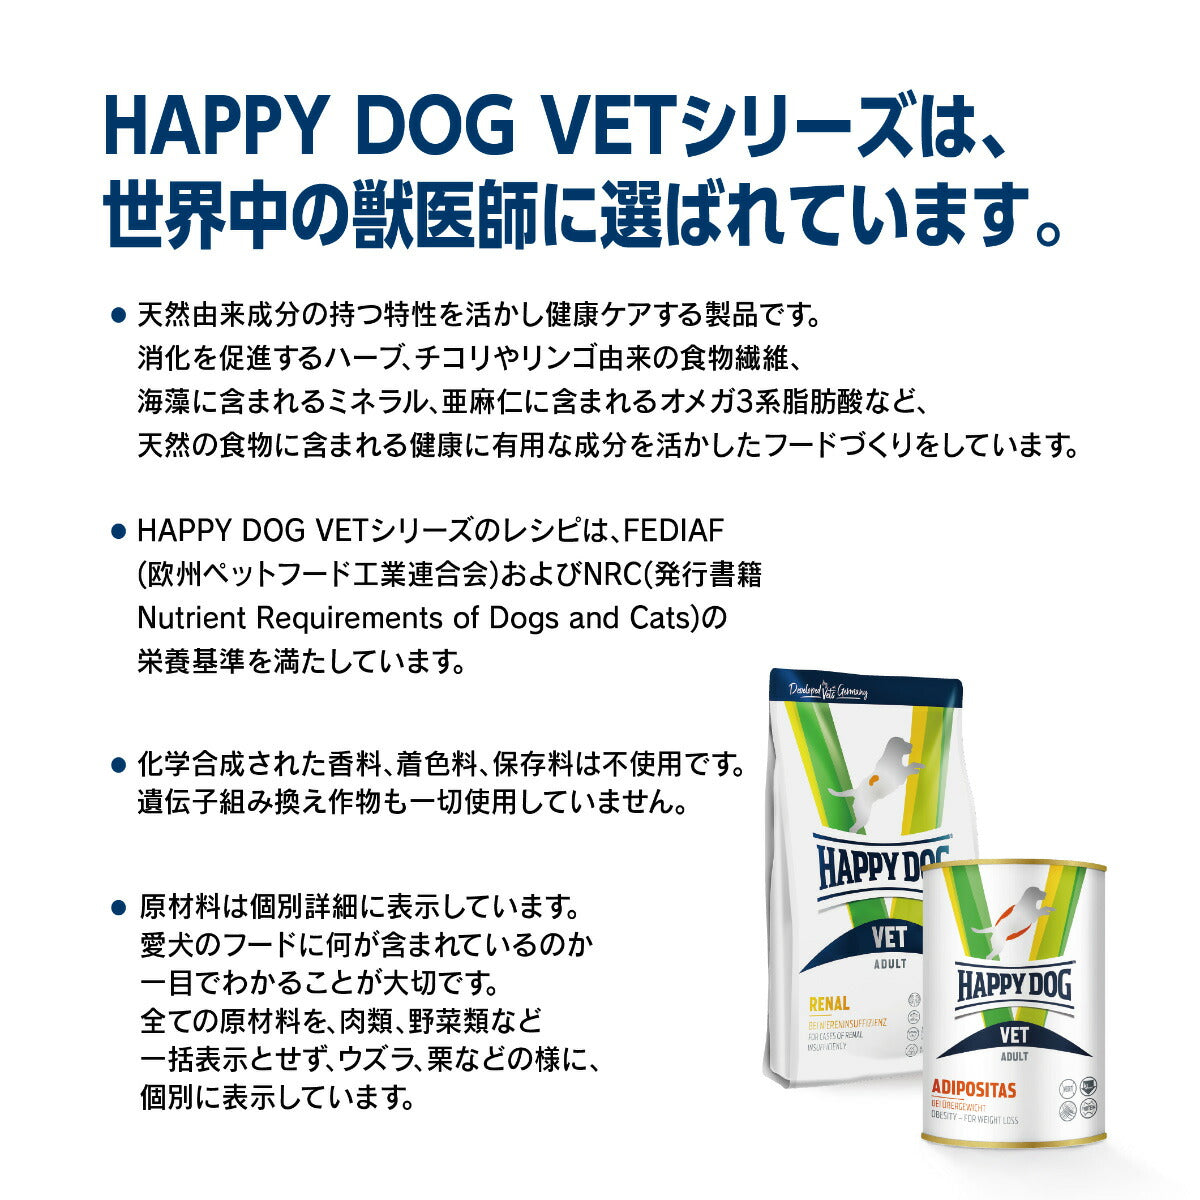 ハッピードッグ HAPPY DOG VET ドッグフード 犬用療法食 インテスティナル ローファット（消化器ケア/低脂肪） 80g